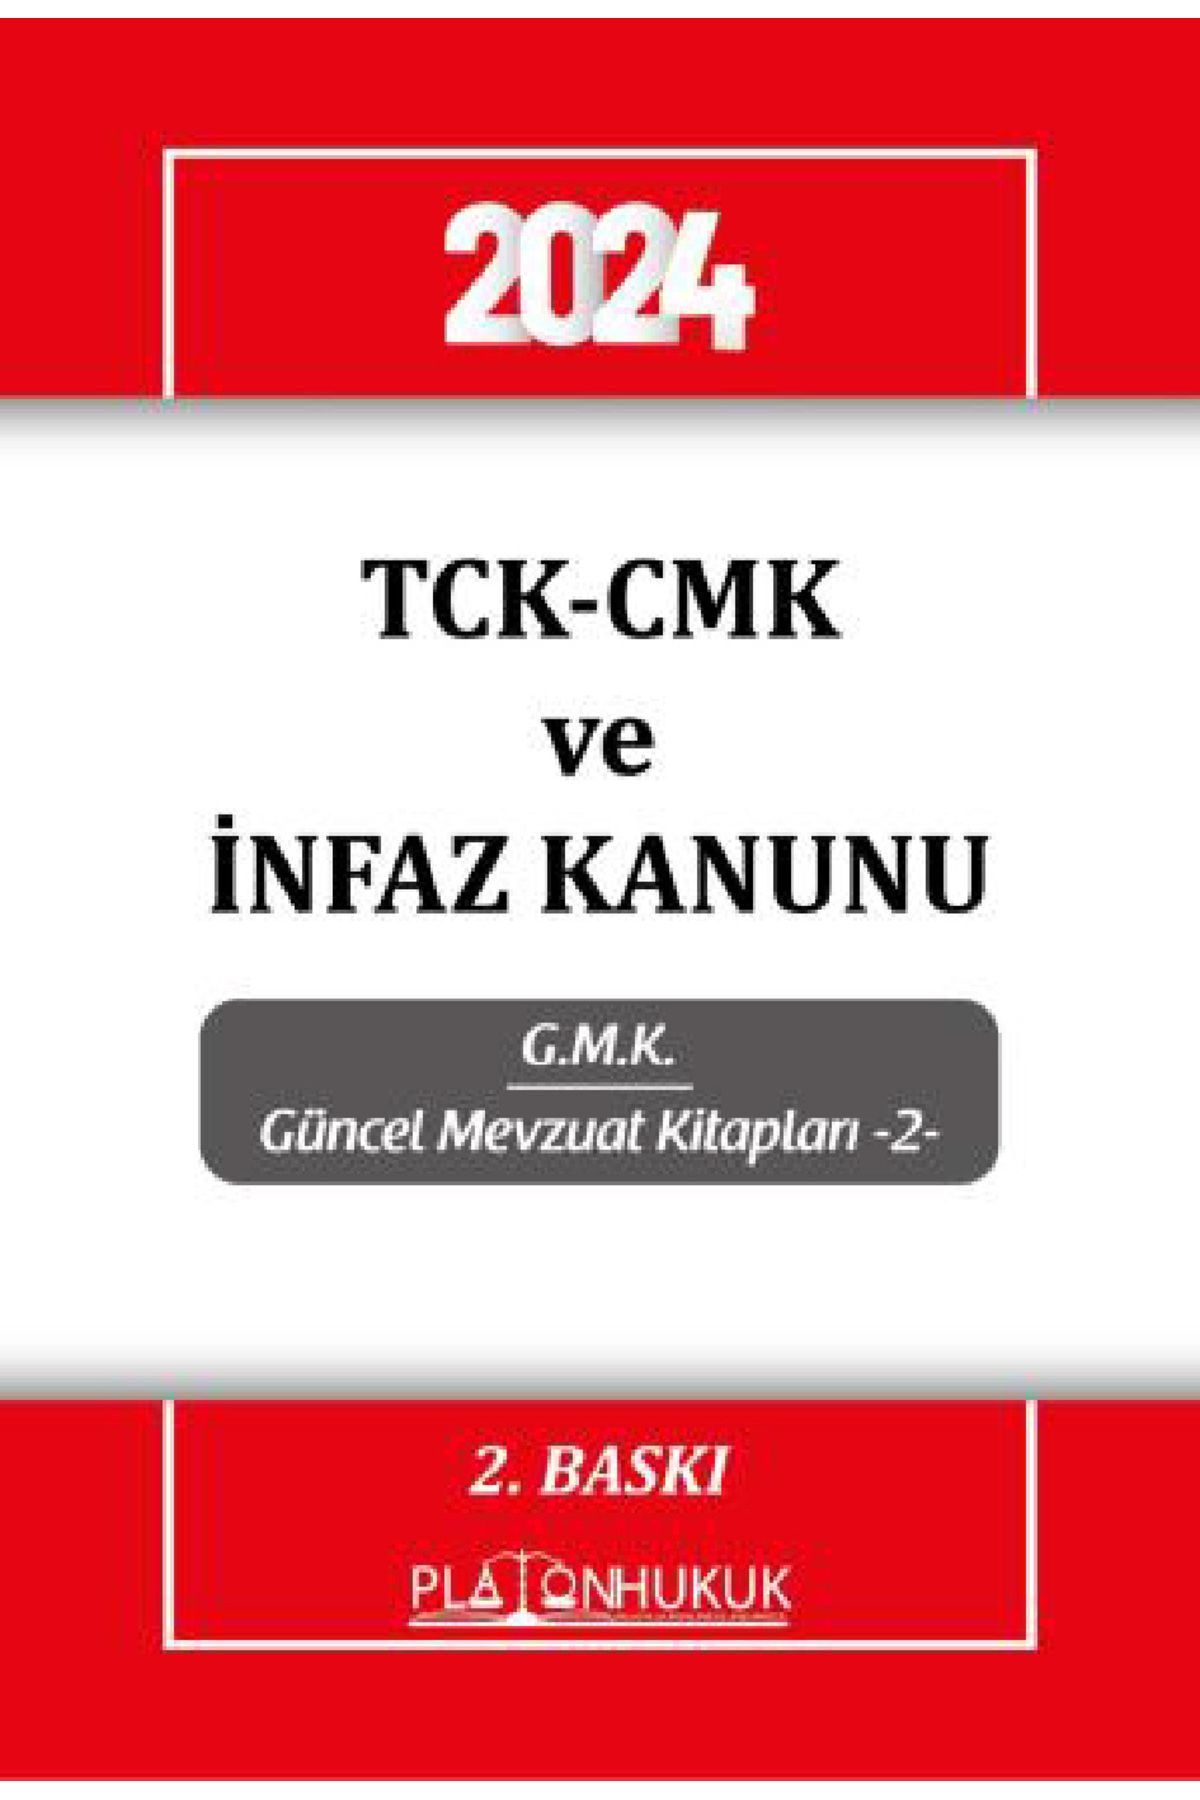 platon hukuk yayınları TCK-CMK ve İNFAZ KANUNU